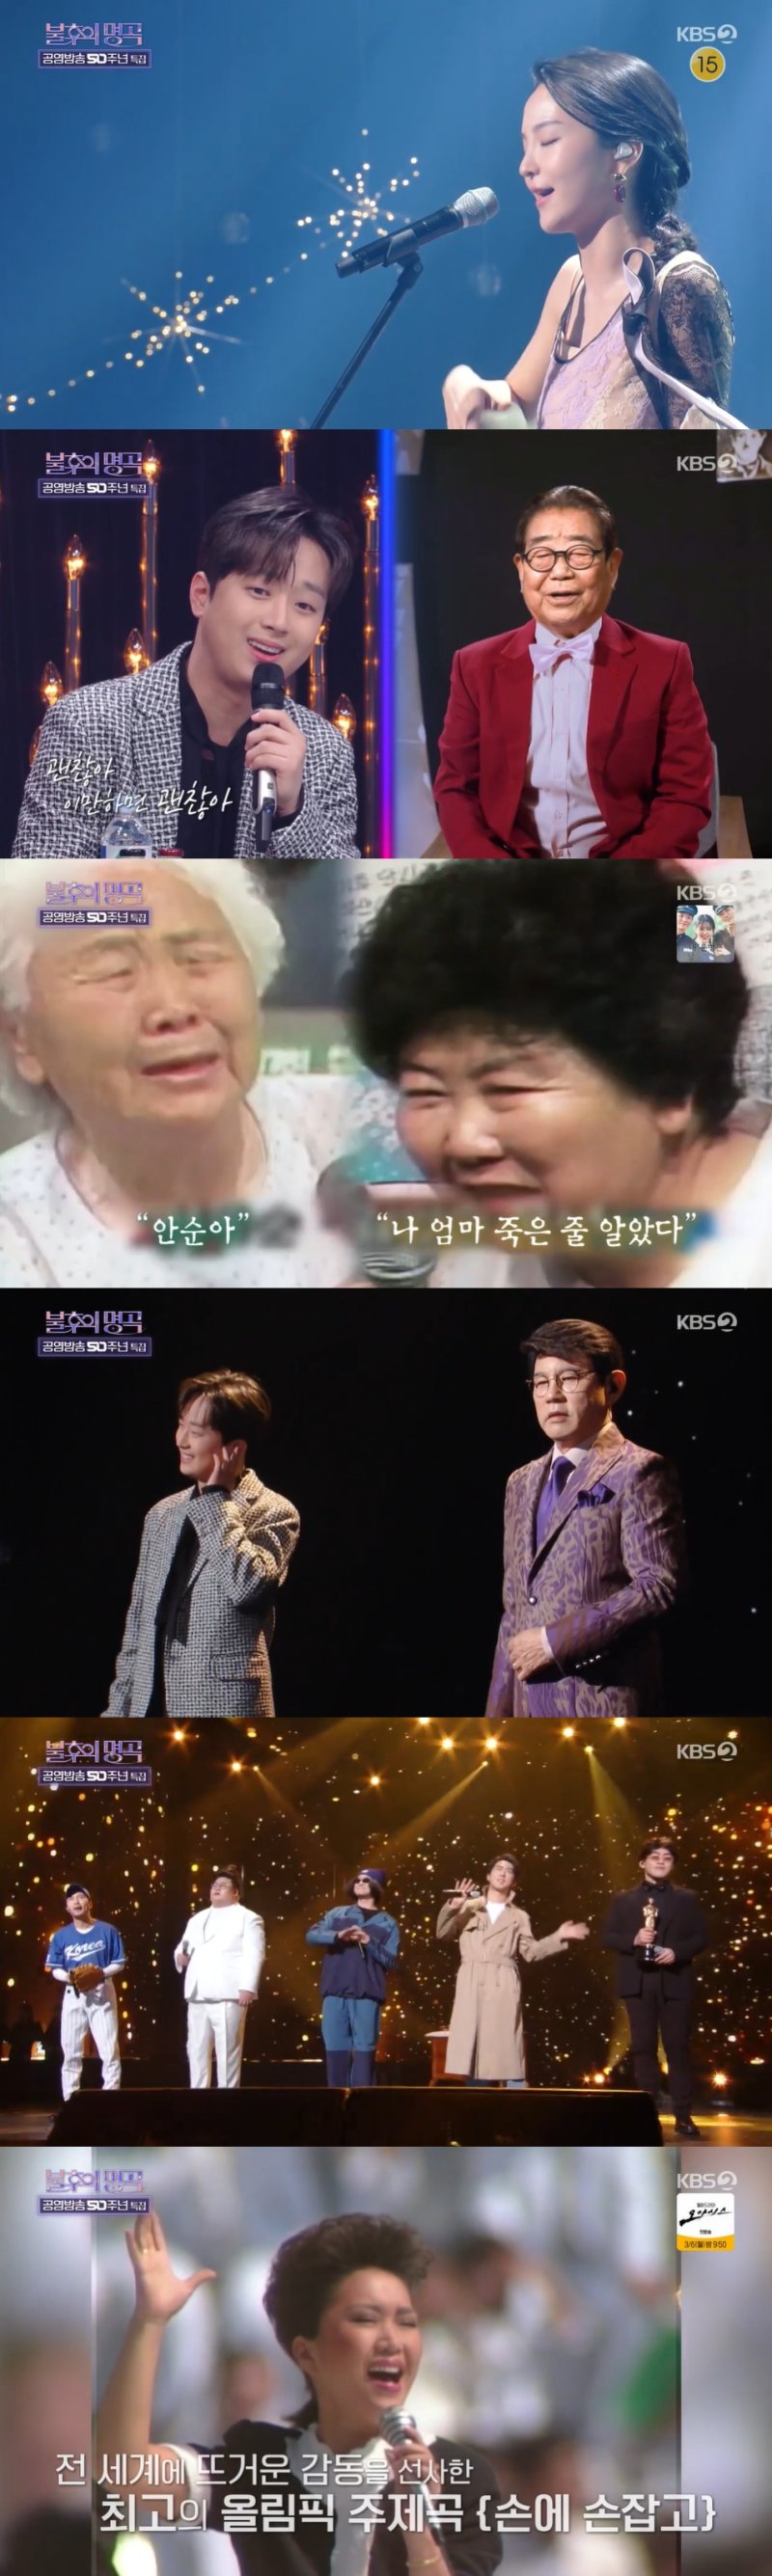 '불후' 송해부터 코리아나까지, 노래로 돌아본 KBS 50년 역사(종합)